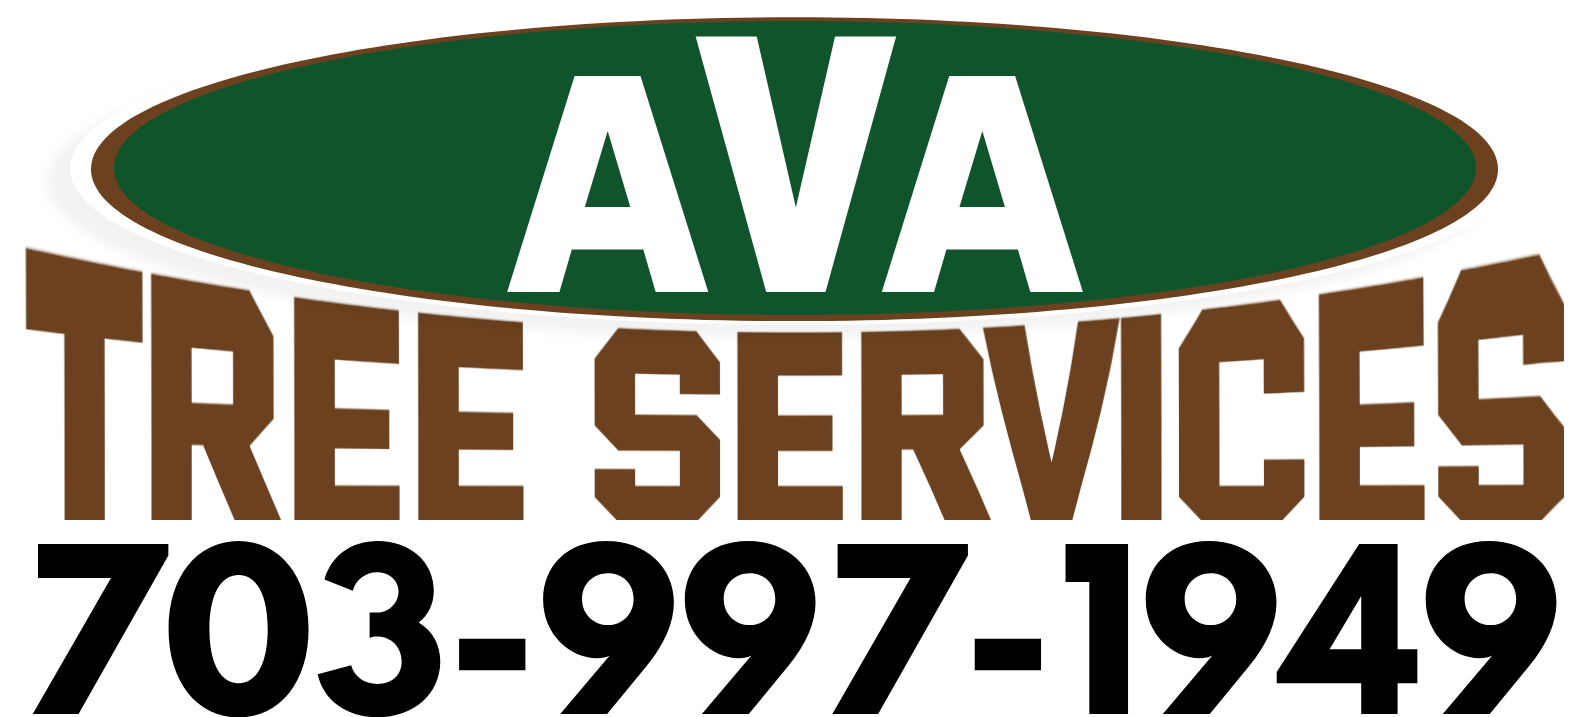 AVA treeservices logo 3.0 new logo